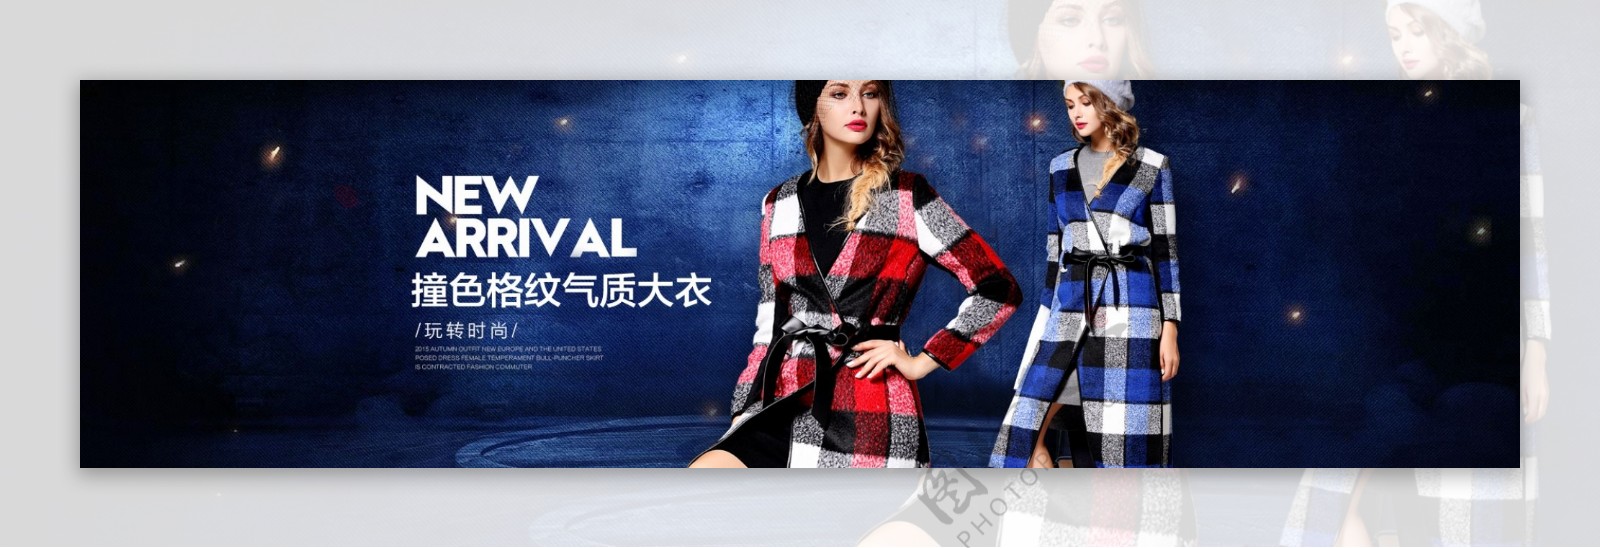 2015冬季新款欧美高端女装大衣首页海报